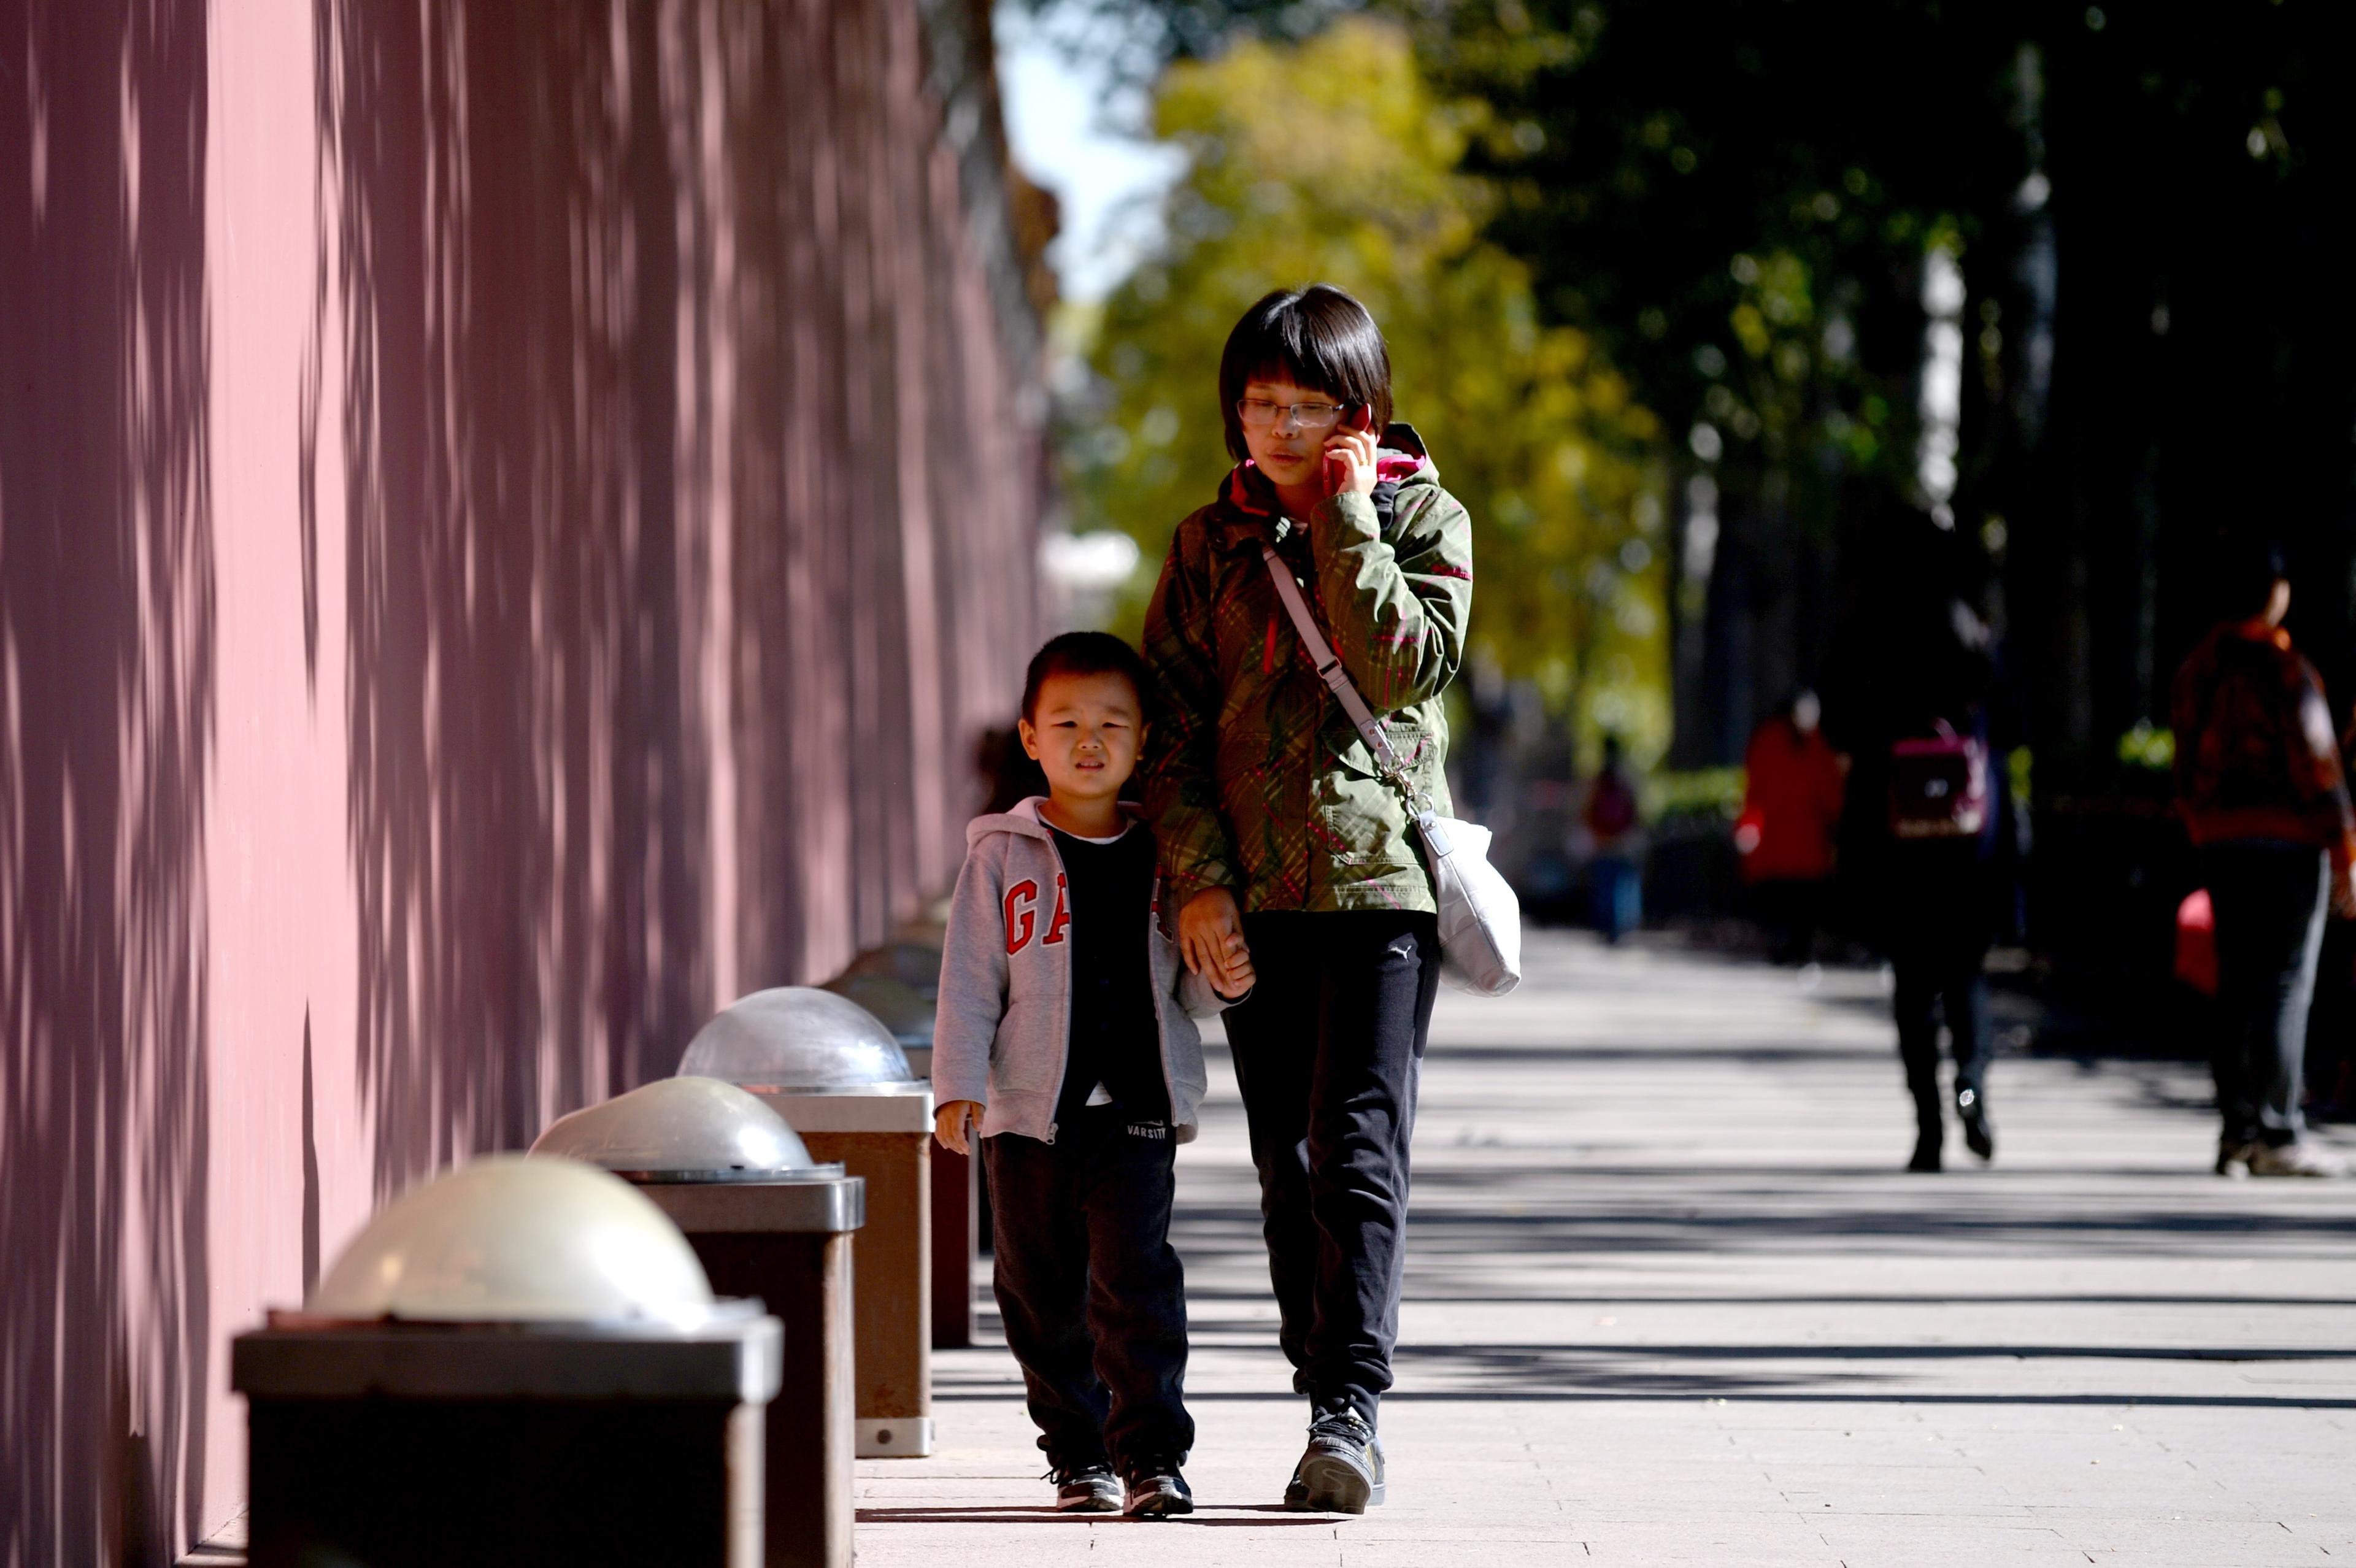  Den 29 oktober meddelade Kina att man avskaffar ettbarnspolitiken.  Man hoppas att det ska hjälpa till att sätta fart på ekonomin. (Foto: Wang Zhao /AFP/Getty Images)